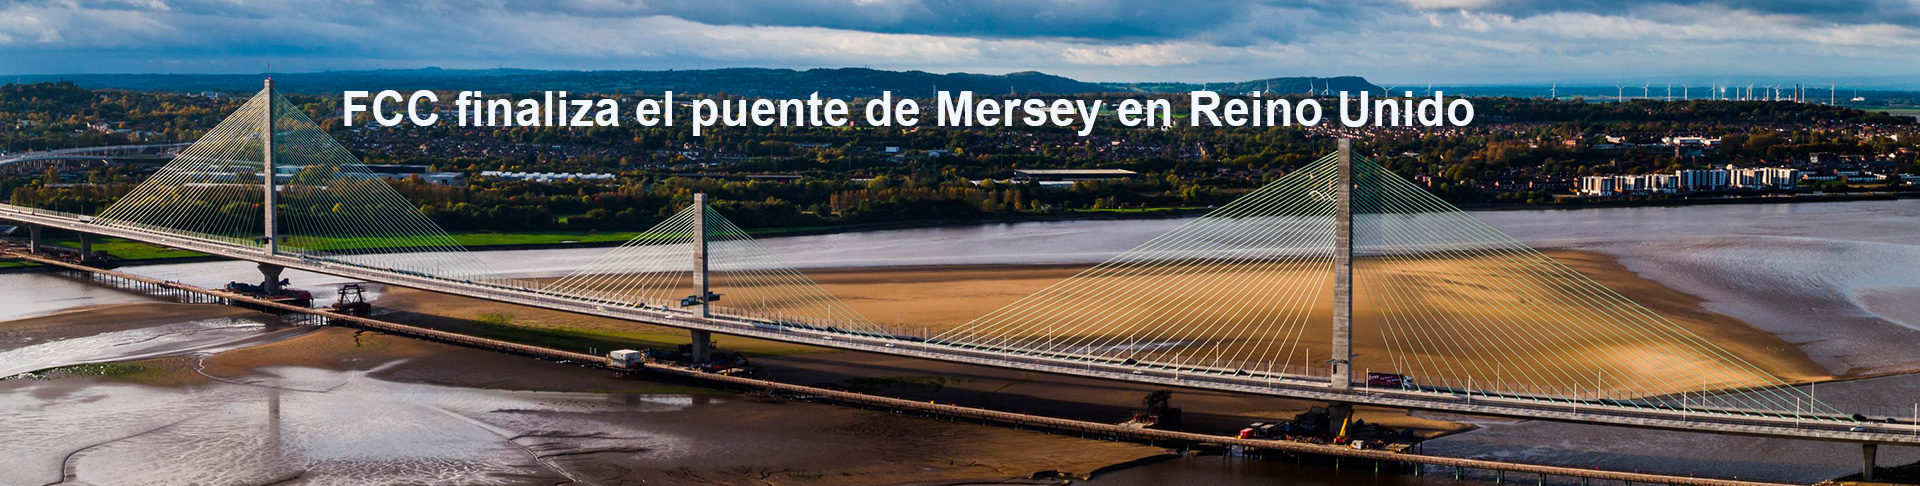 FCC finaliza el puente de Mersey en Reino Unido